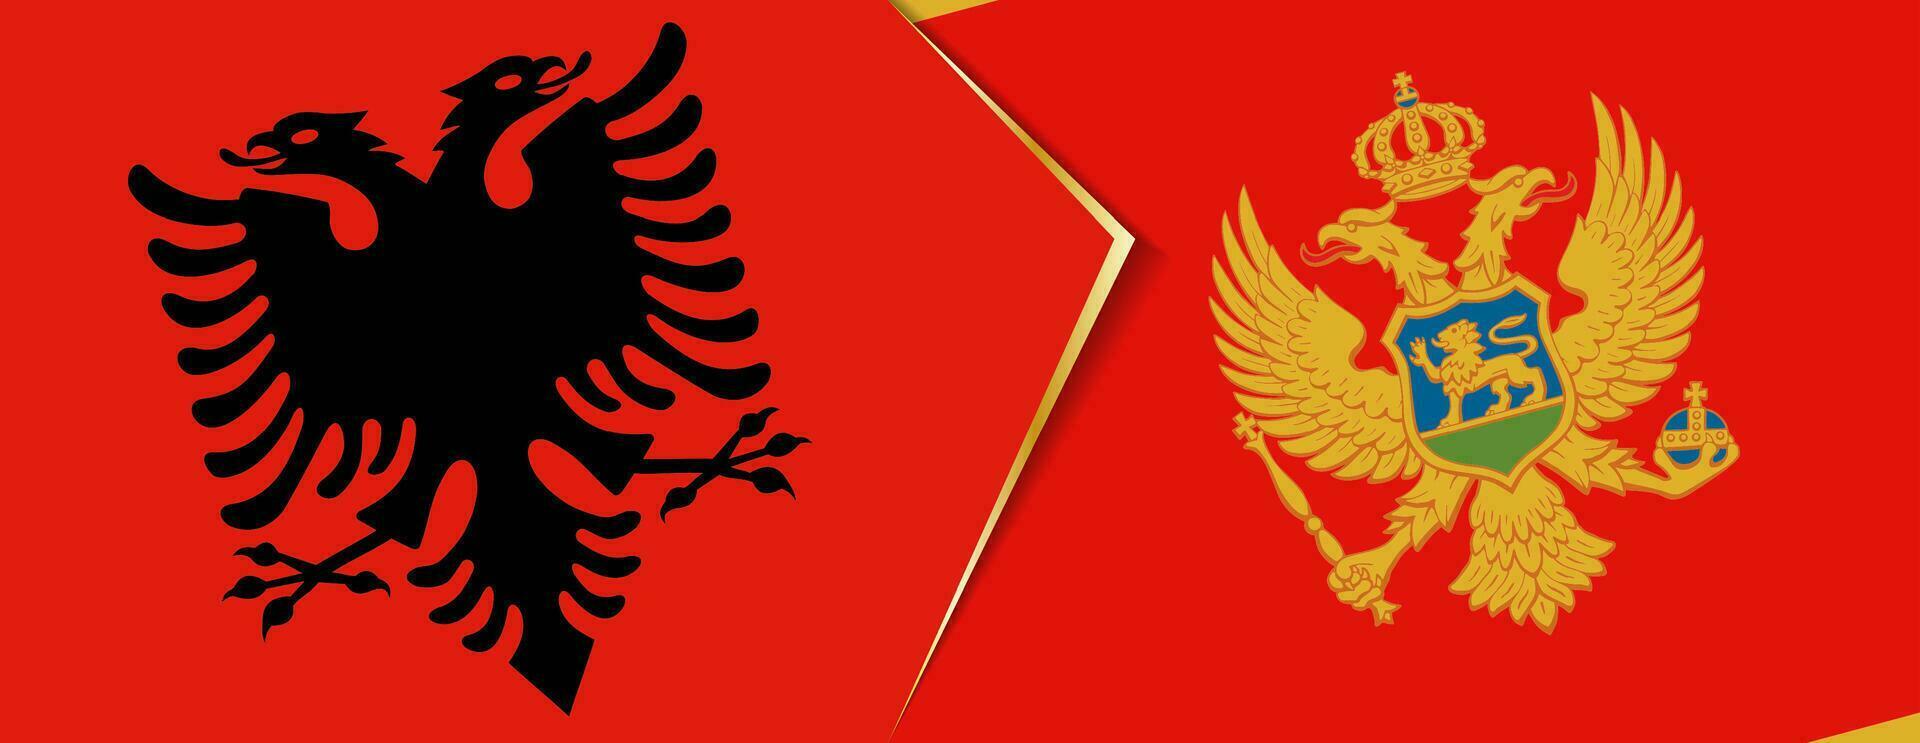 albania och monte flaggor, två vektor flaggor.